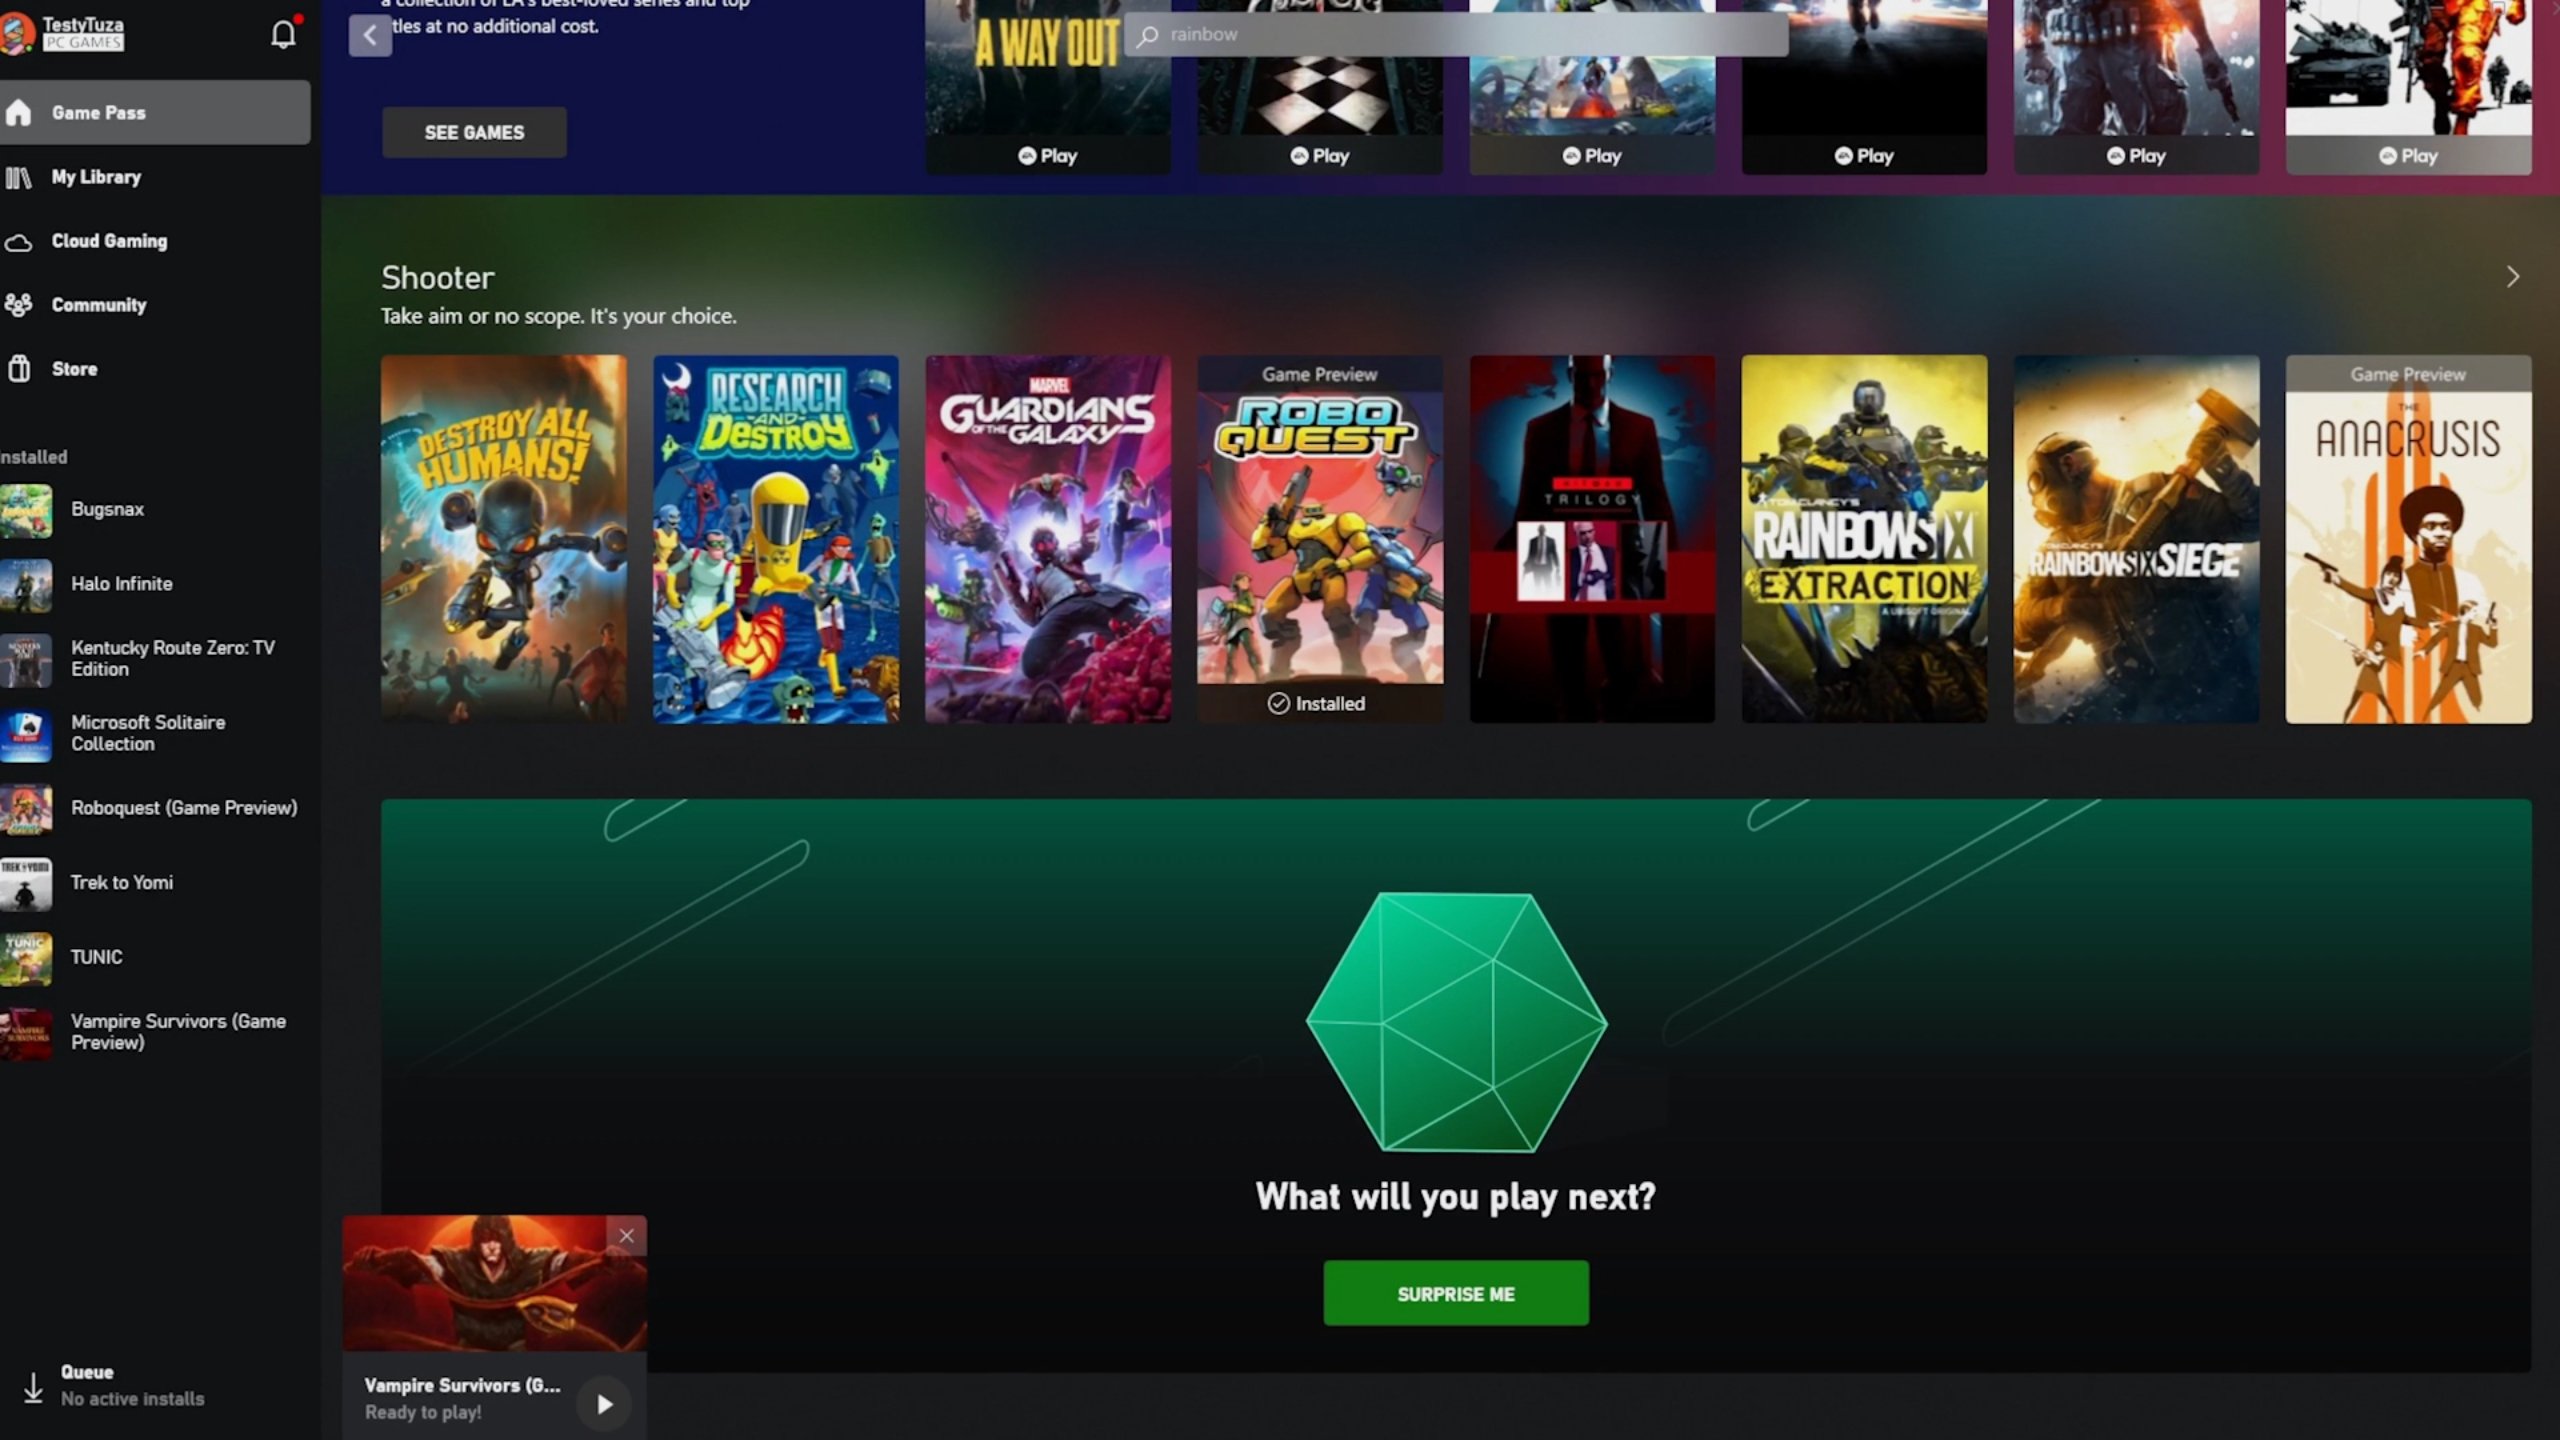 Microsoft anuncia novos jogos para o Xbox Game Pass - TechBreak